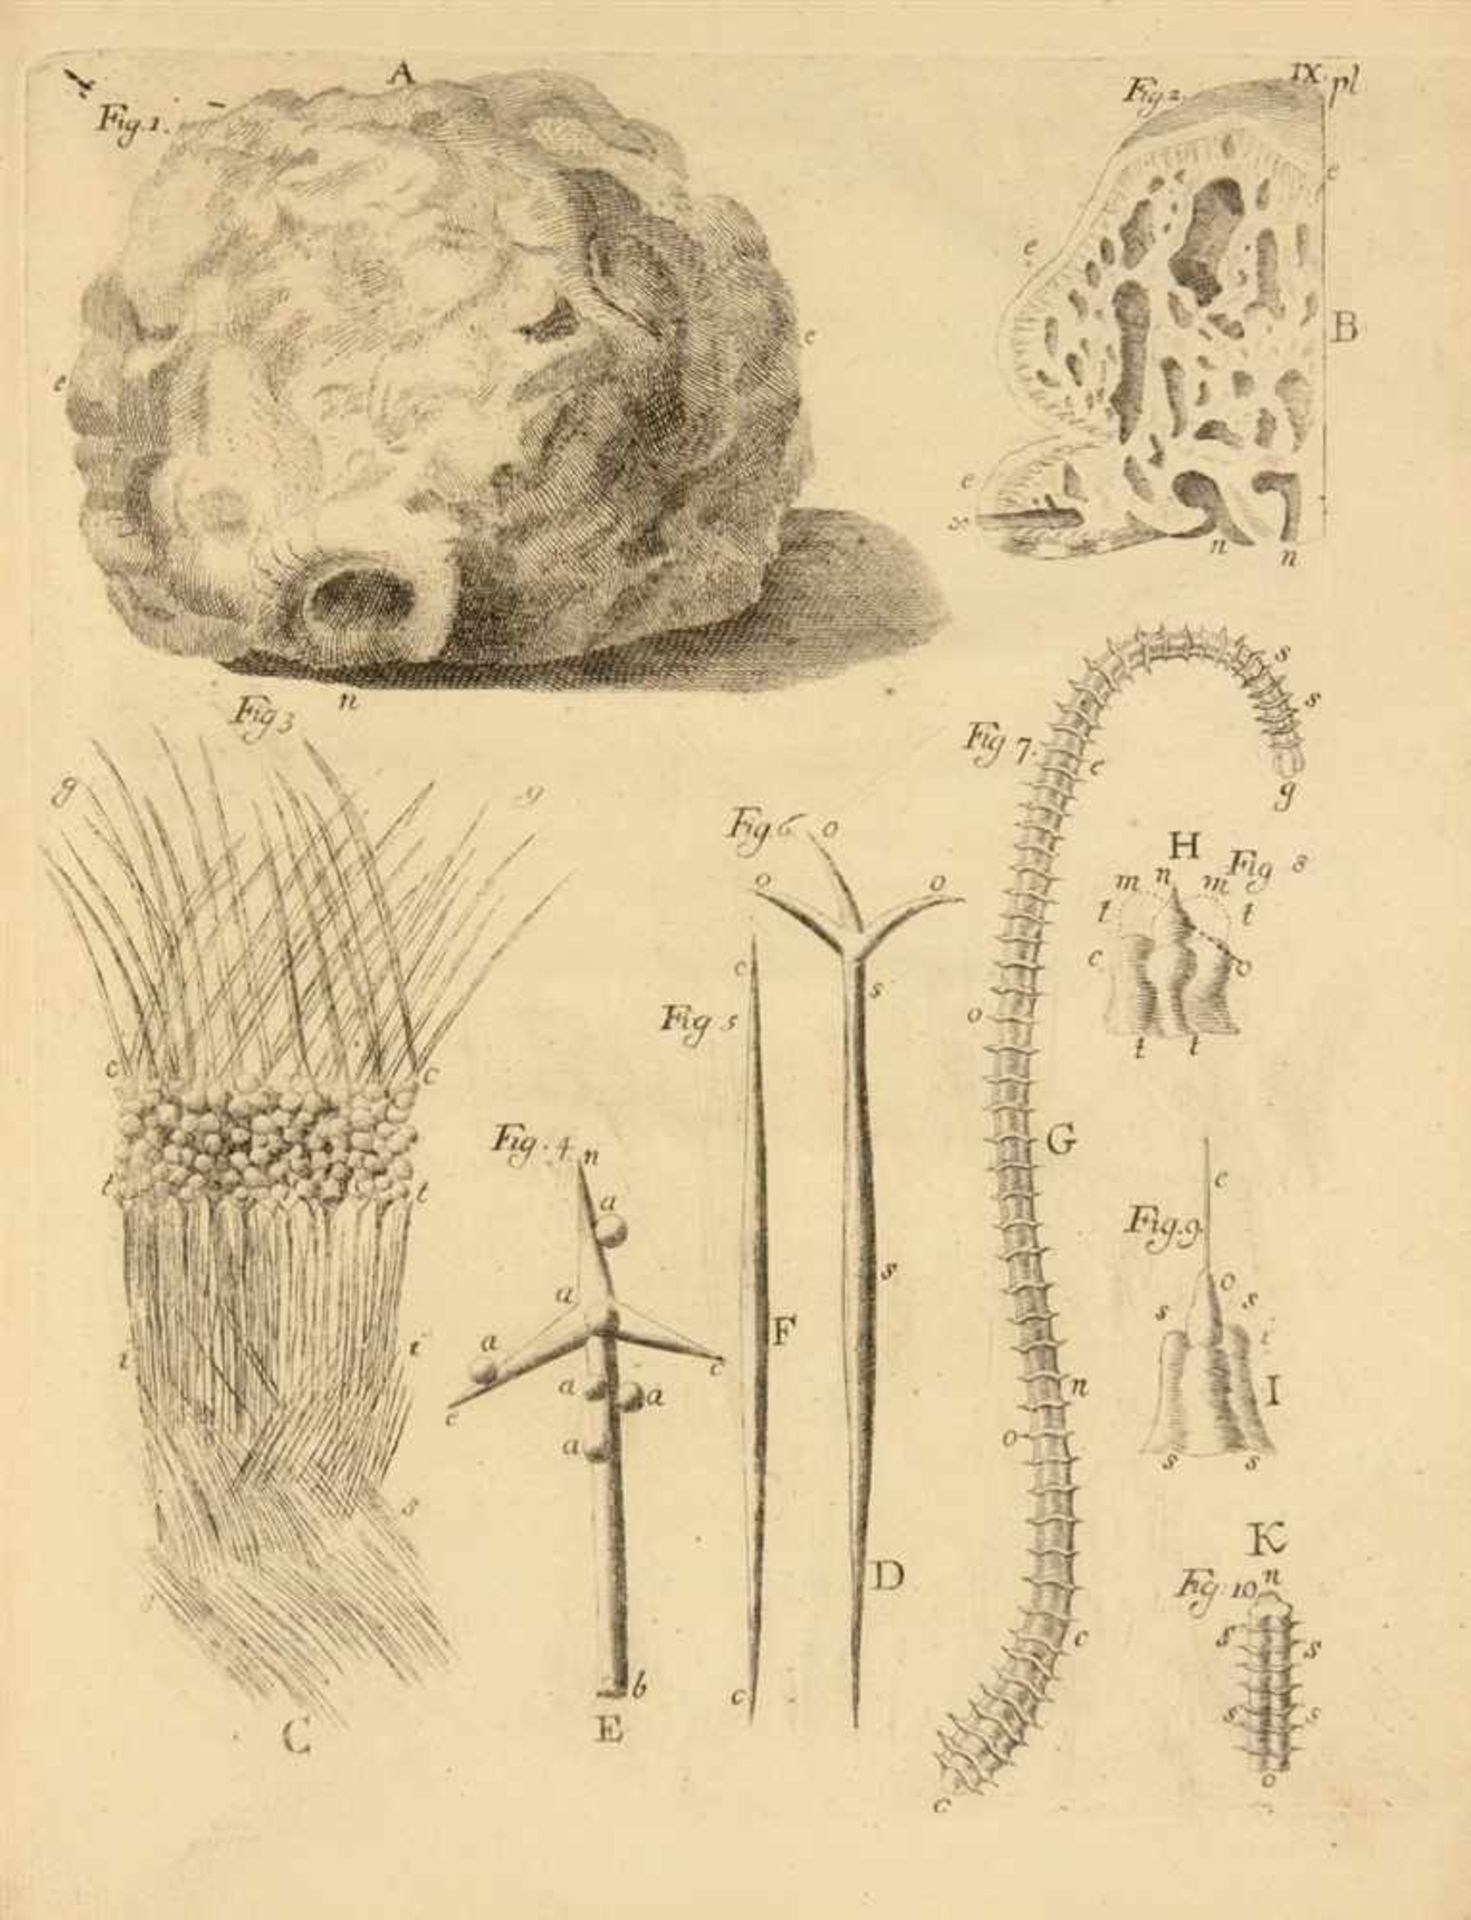 Korallen. - 2 naturwissenschaftliche Werke über Meeresbiologie. Den Haag 1756-1758. 25,7 x 20 cm. - Bild 2 aus 2